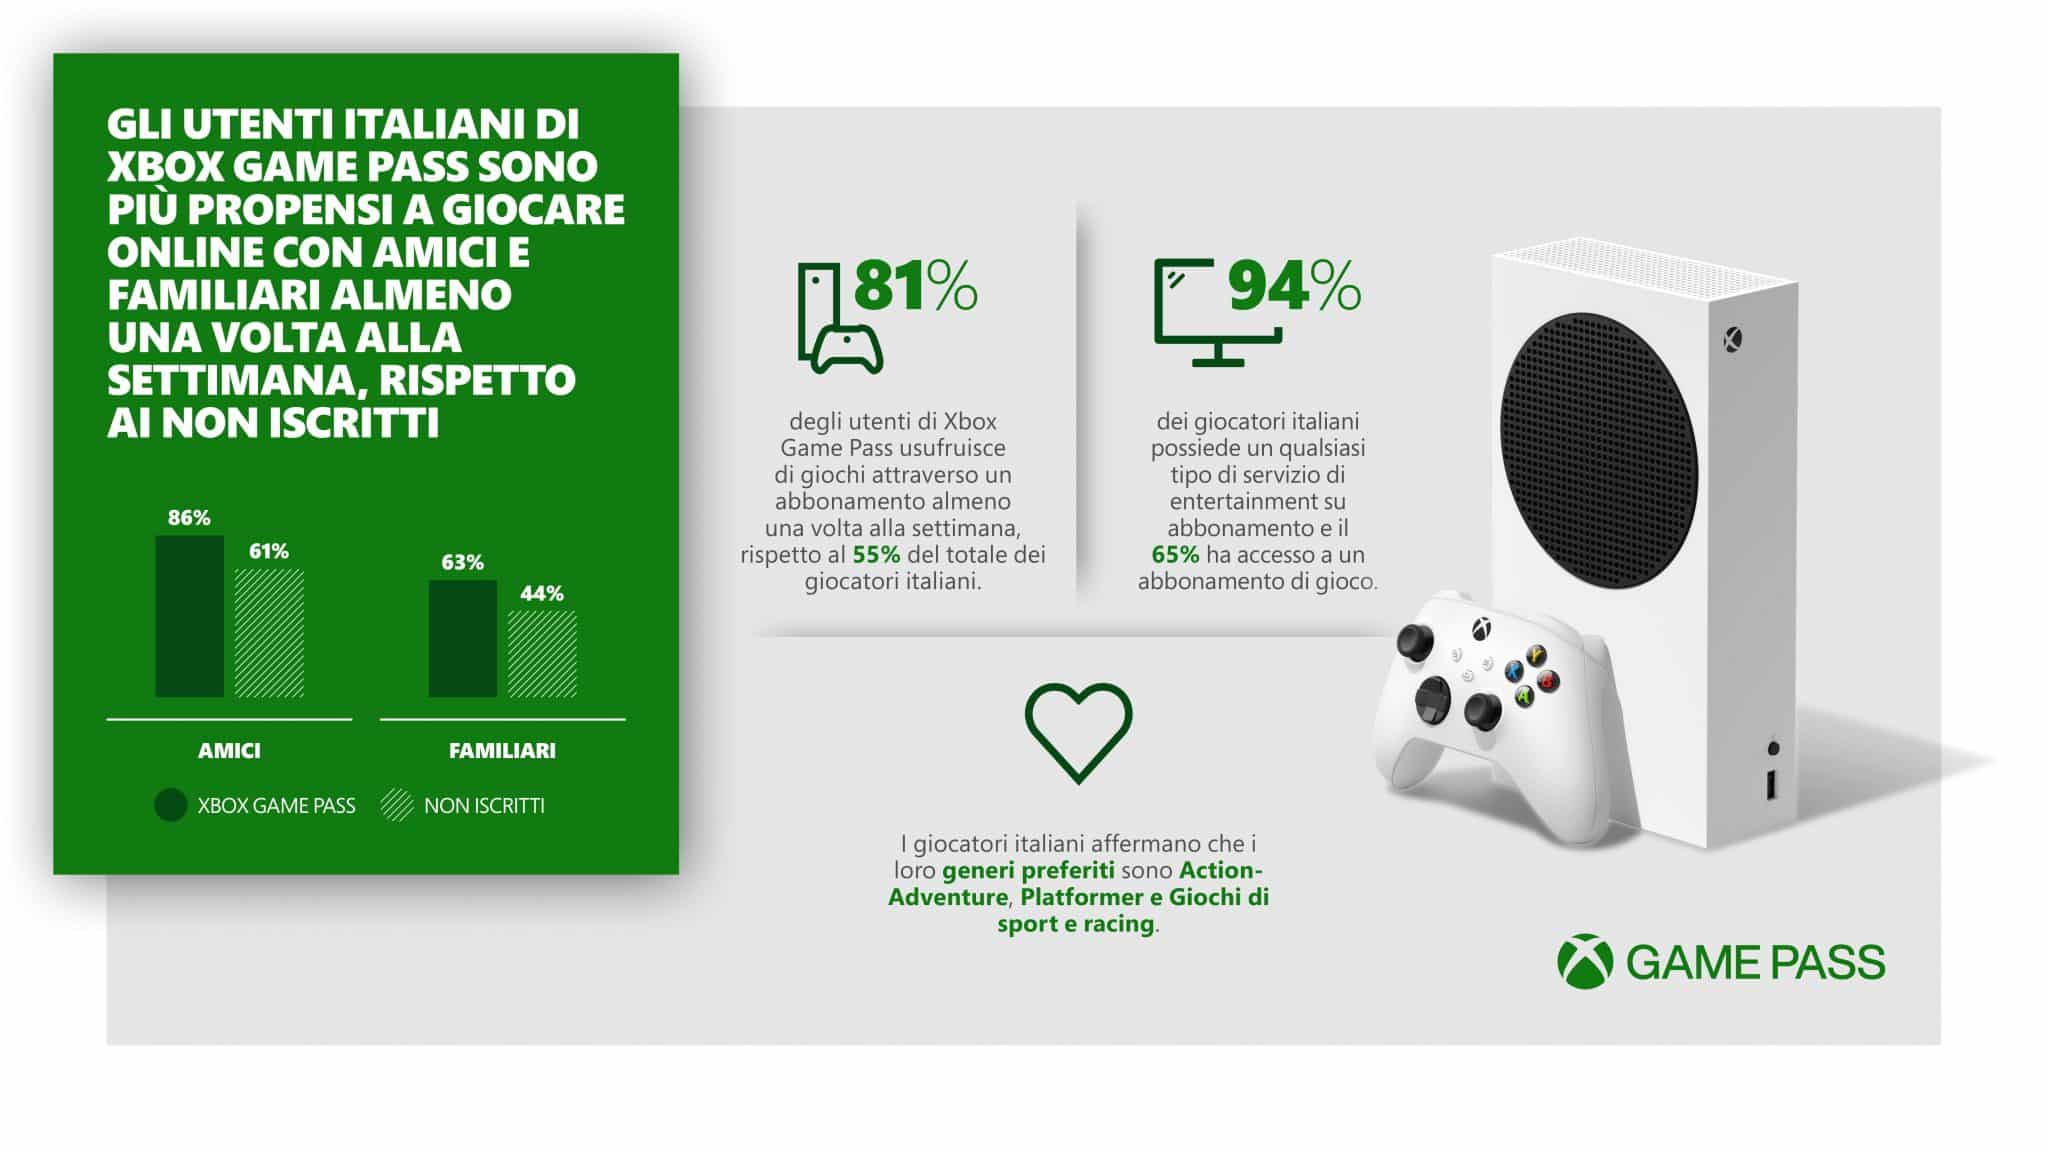 Xbox Game Pass: una ricerca sui videogiocatori italiani svela risultati sorprendenti (e positivi) 2